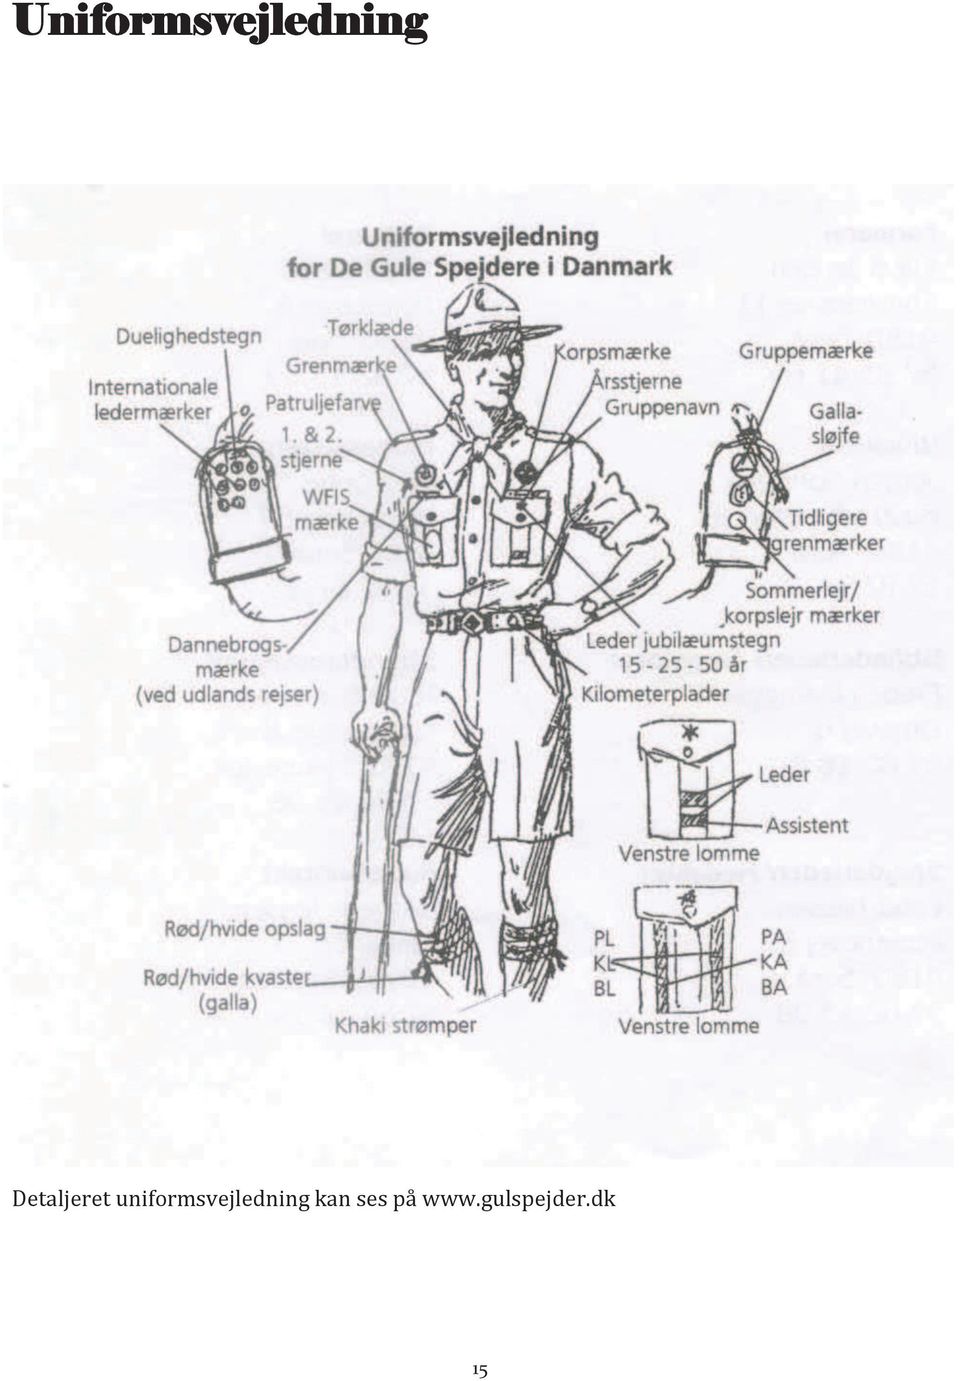 uniformsvejledning